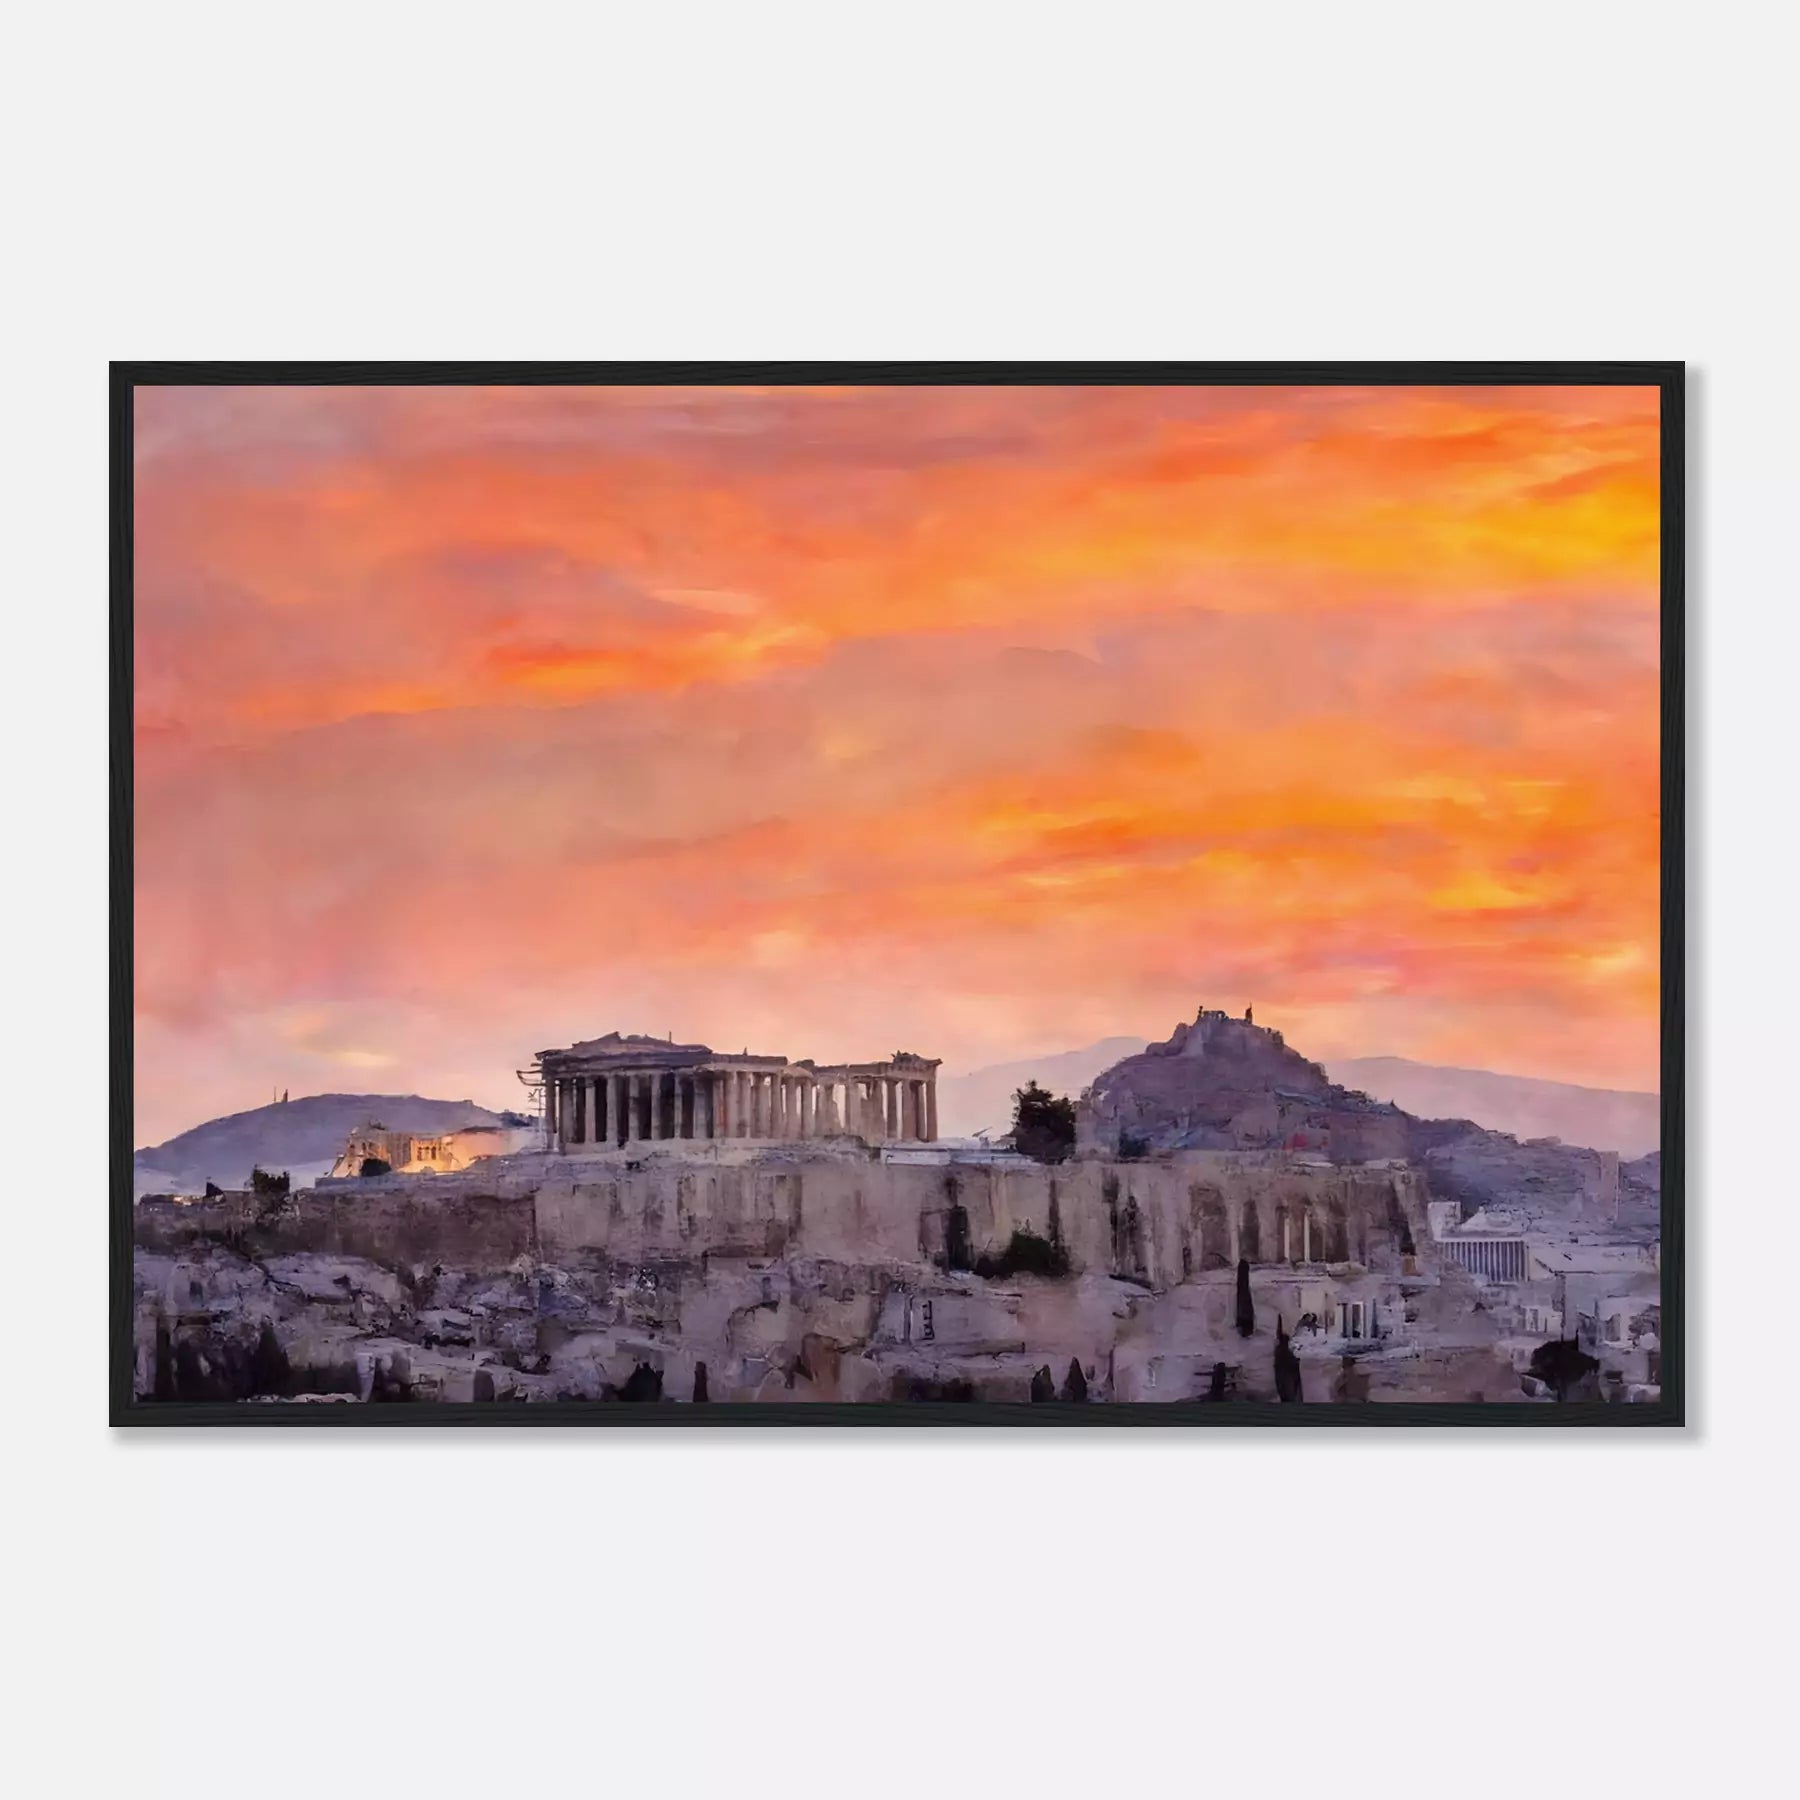 Acropolis of Athens - Greece